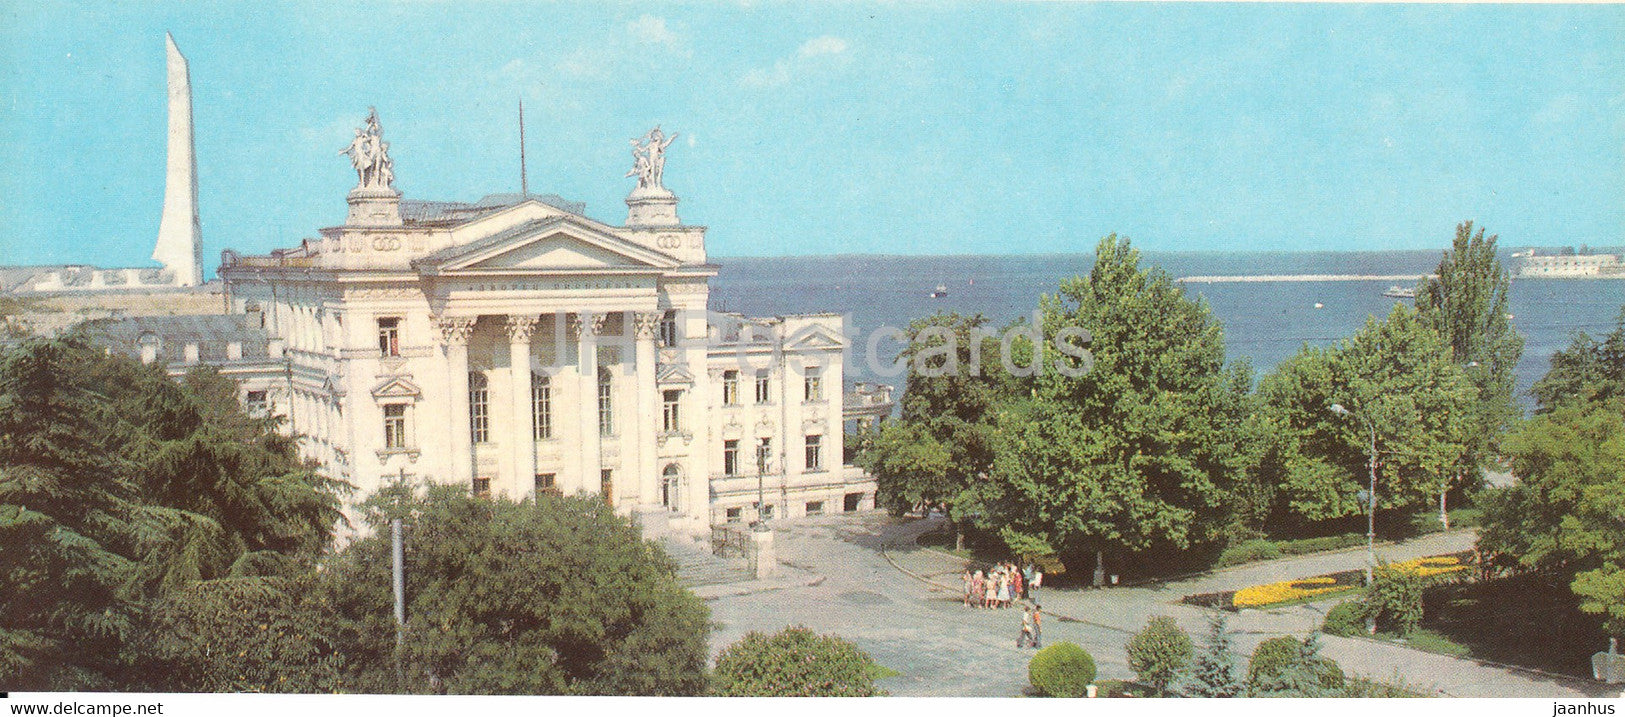 Sevastopol - Palace of Pioneers and Schoolchildrens - Crimea - 1983 - Ukraine USSR - unused - JH Postcards